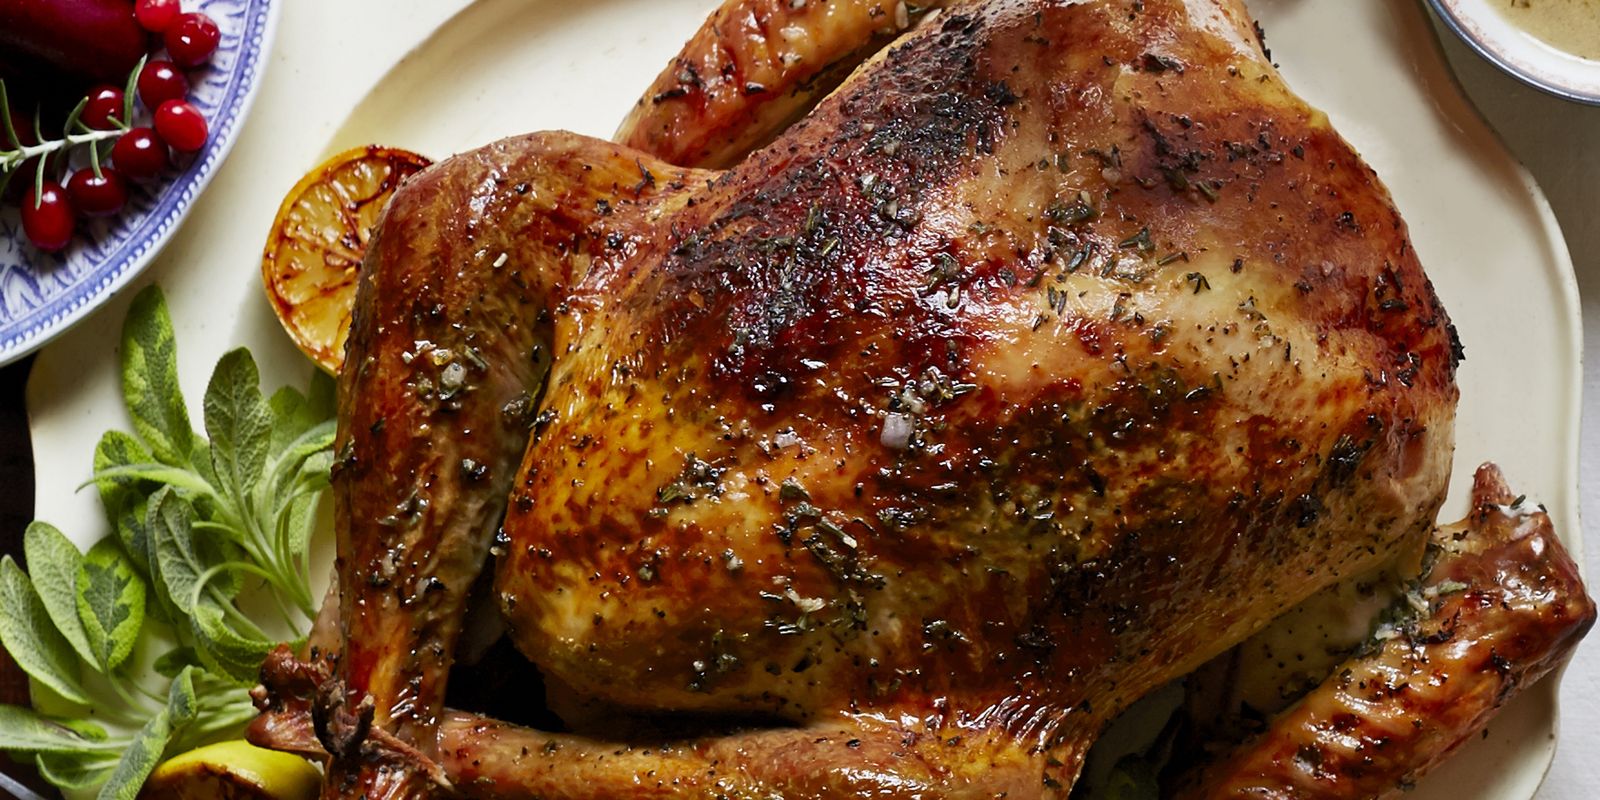 Roast Turkey Recipe For Thanksgiving Diyvila